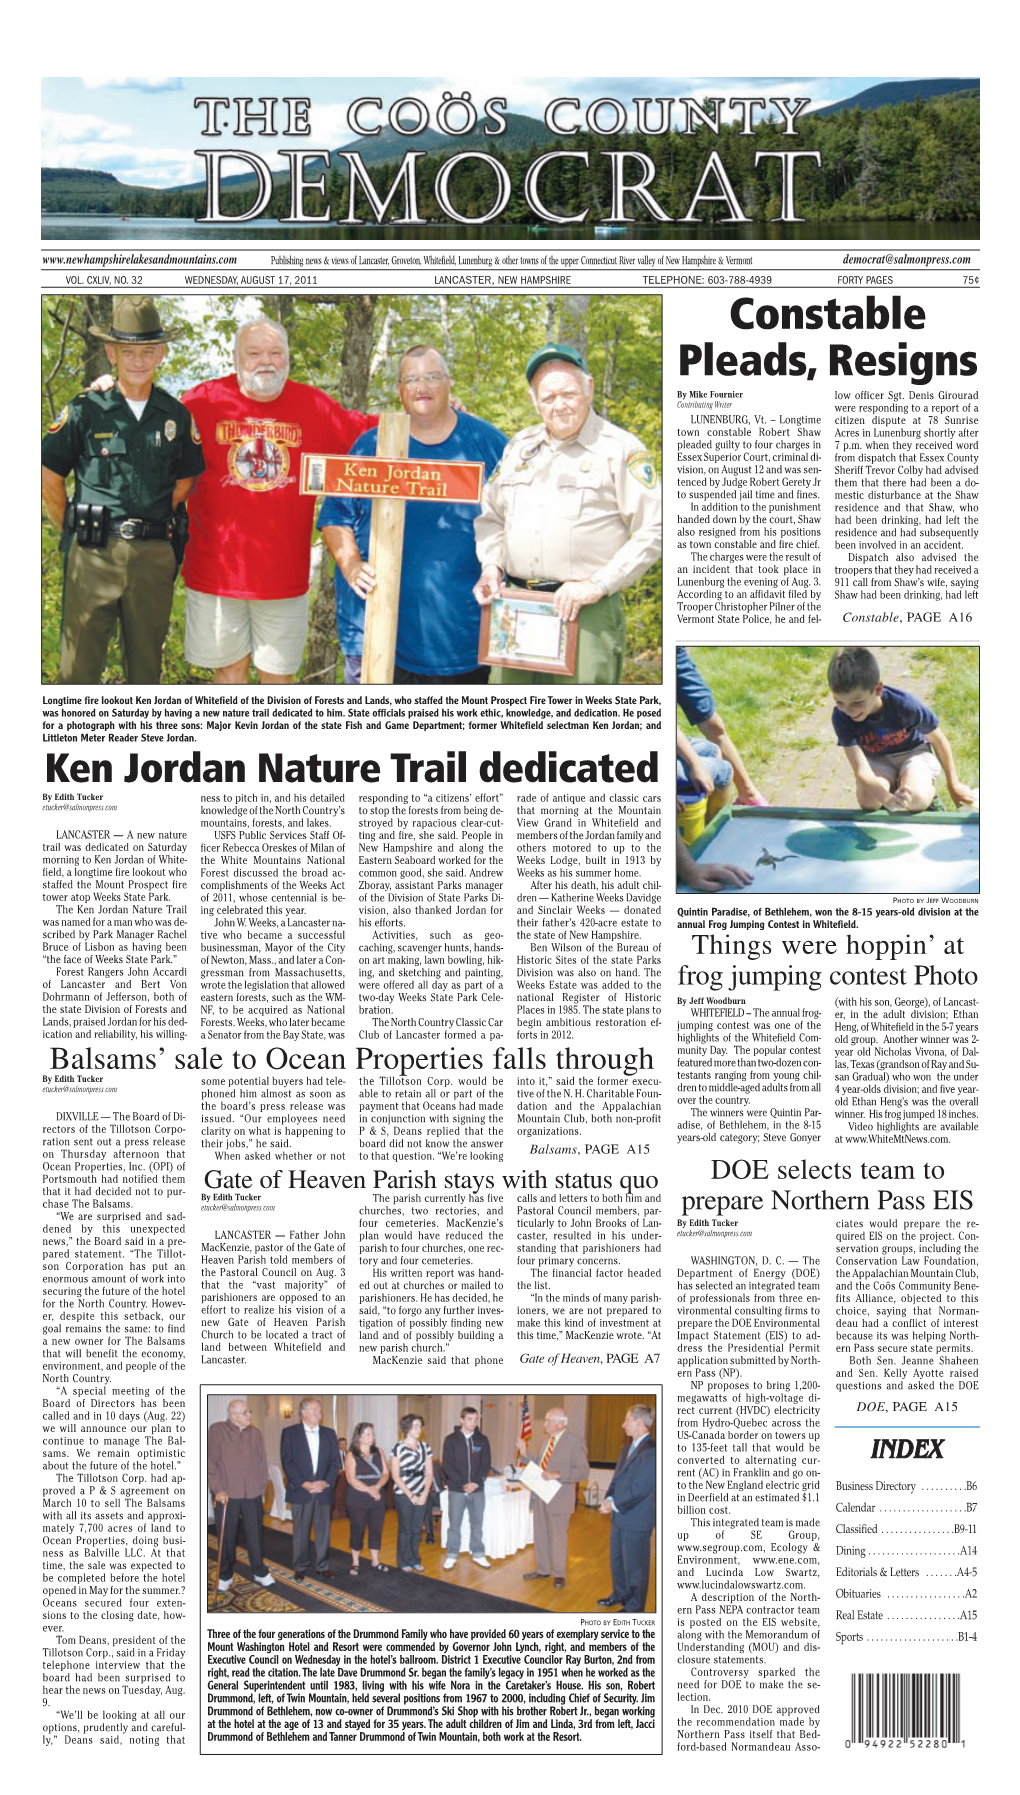 Ken Jordan Nature Trail Dedicated